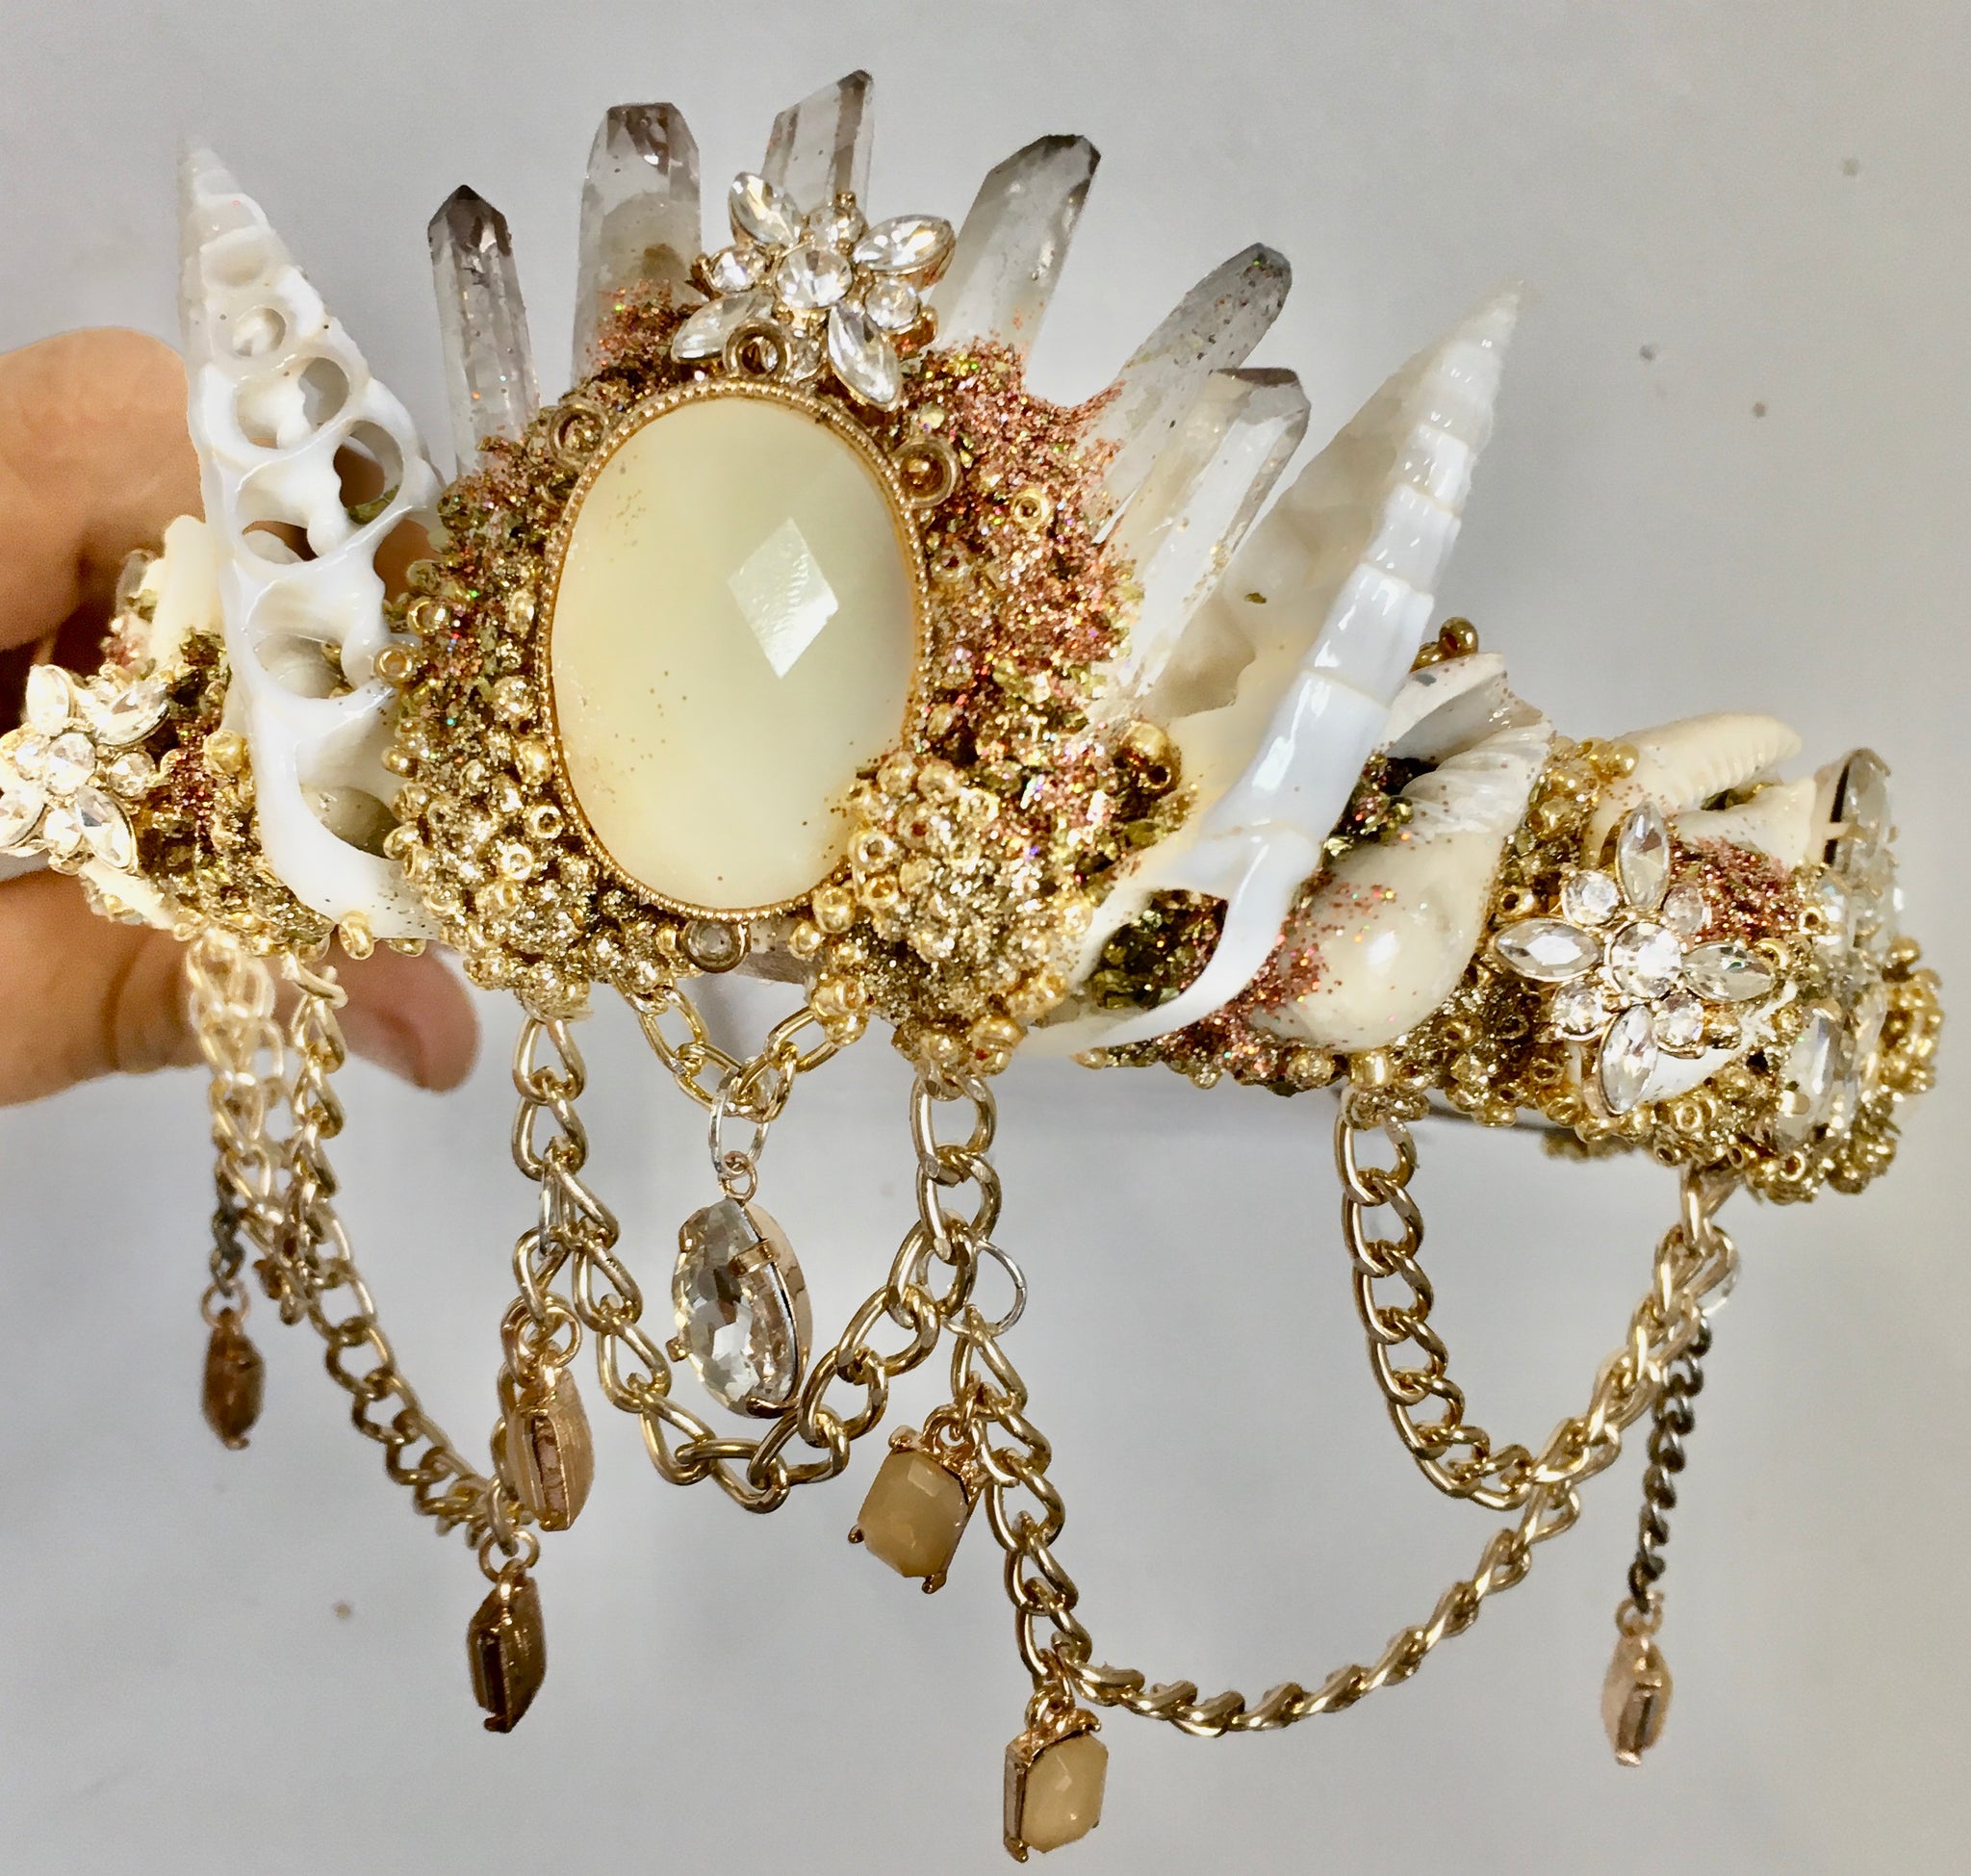 Crystal jewel mermaid crown — Summers Dreaming Mermaid Crowns